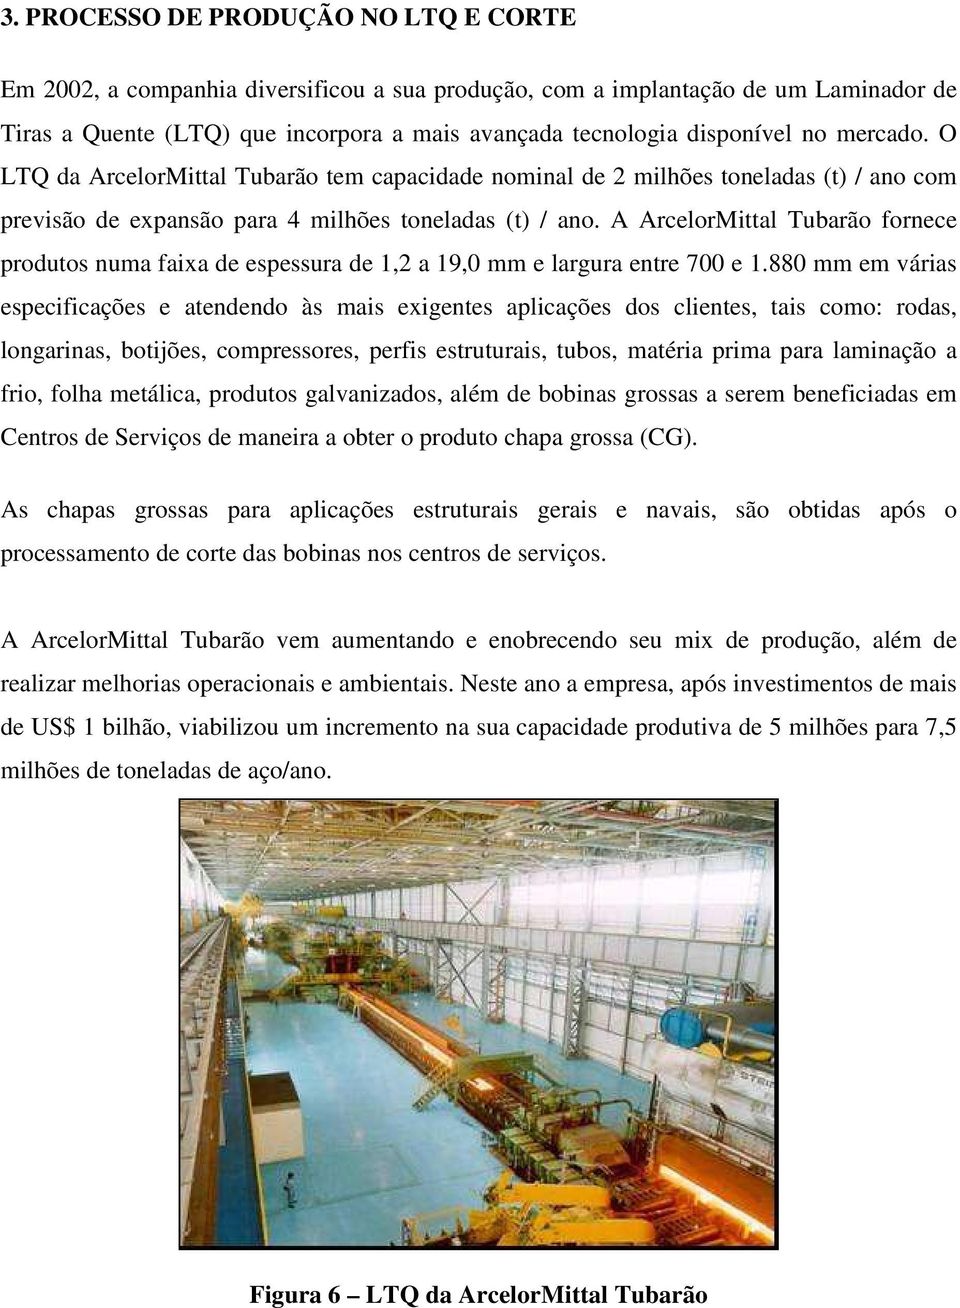 A ArcelorMittal Tubarão fornece produtos numa faixa de espessura de 1,2 a 19,0 mm e largura entre 700 e 1.